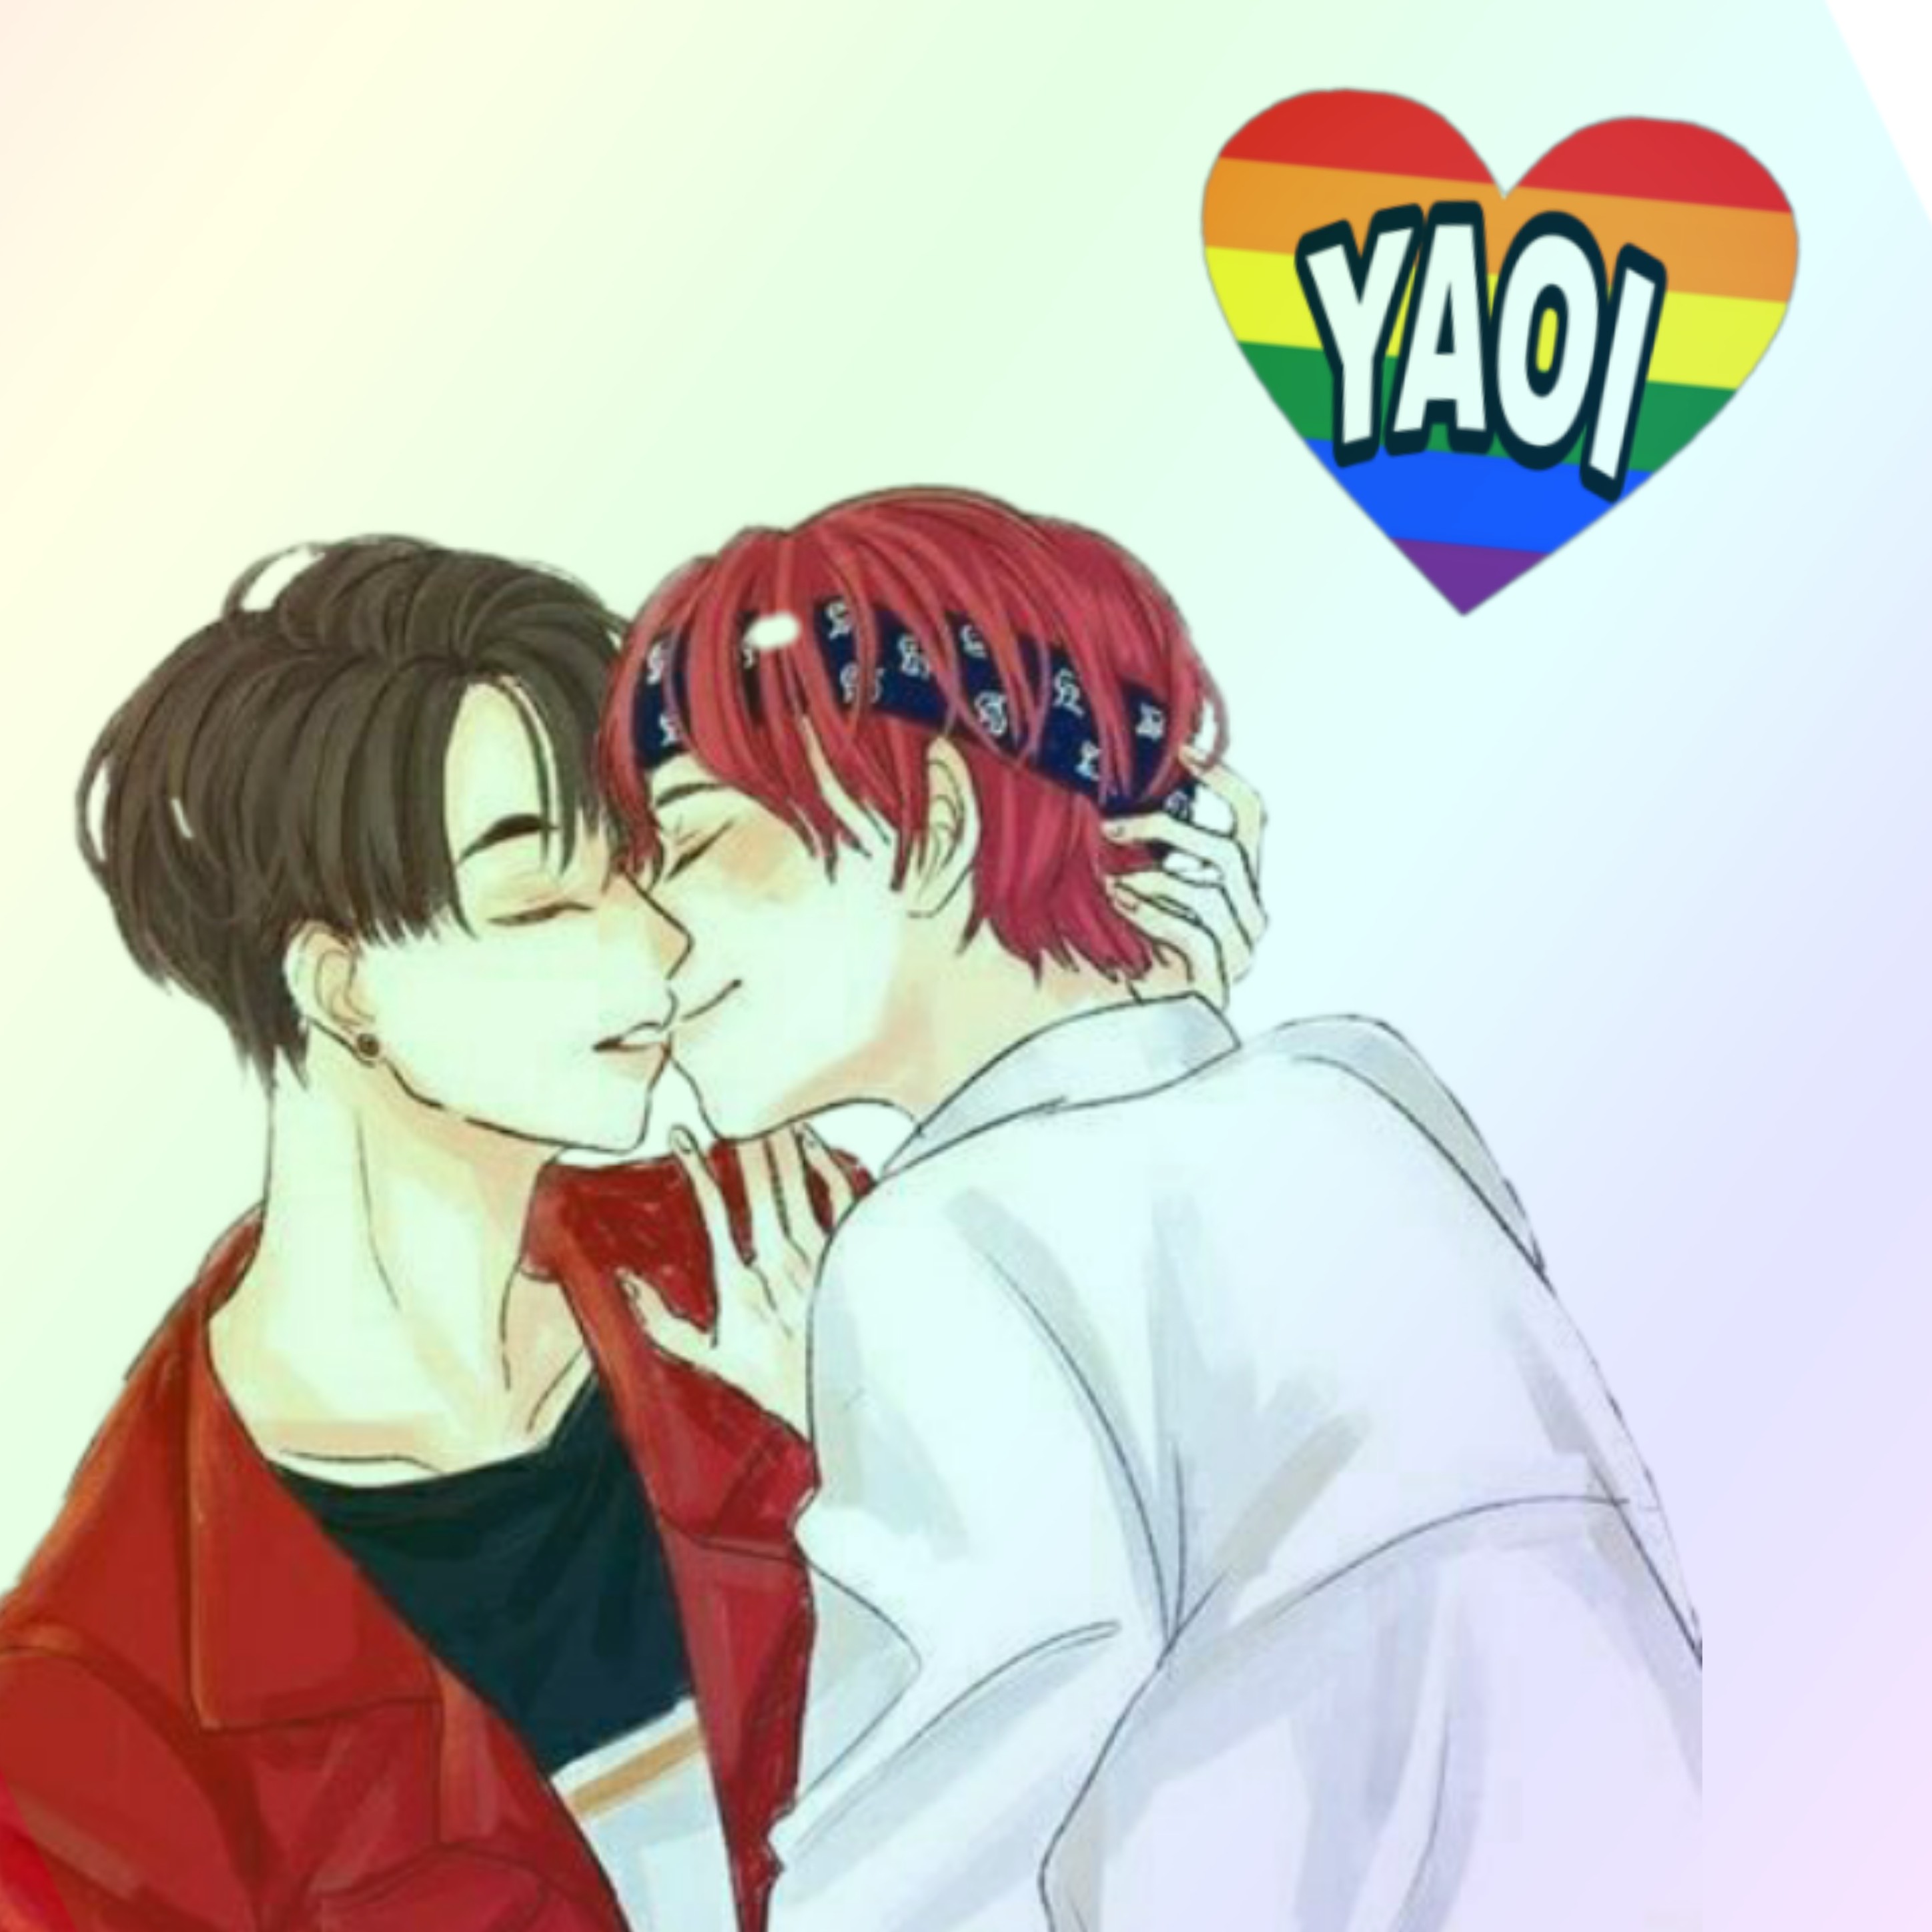 yaoi gay twink fisting cartoon